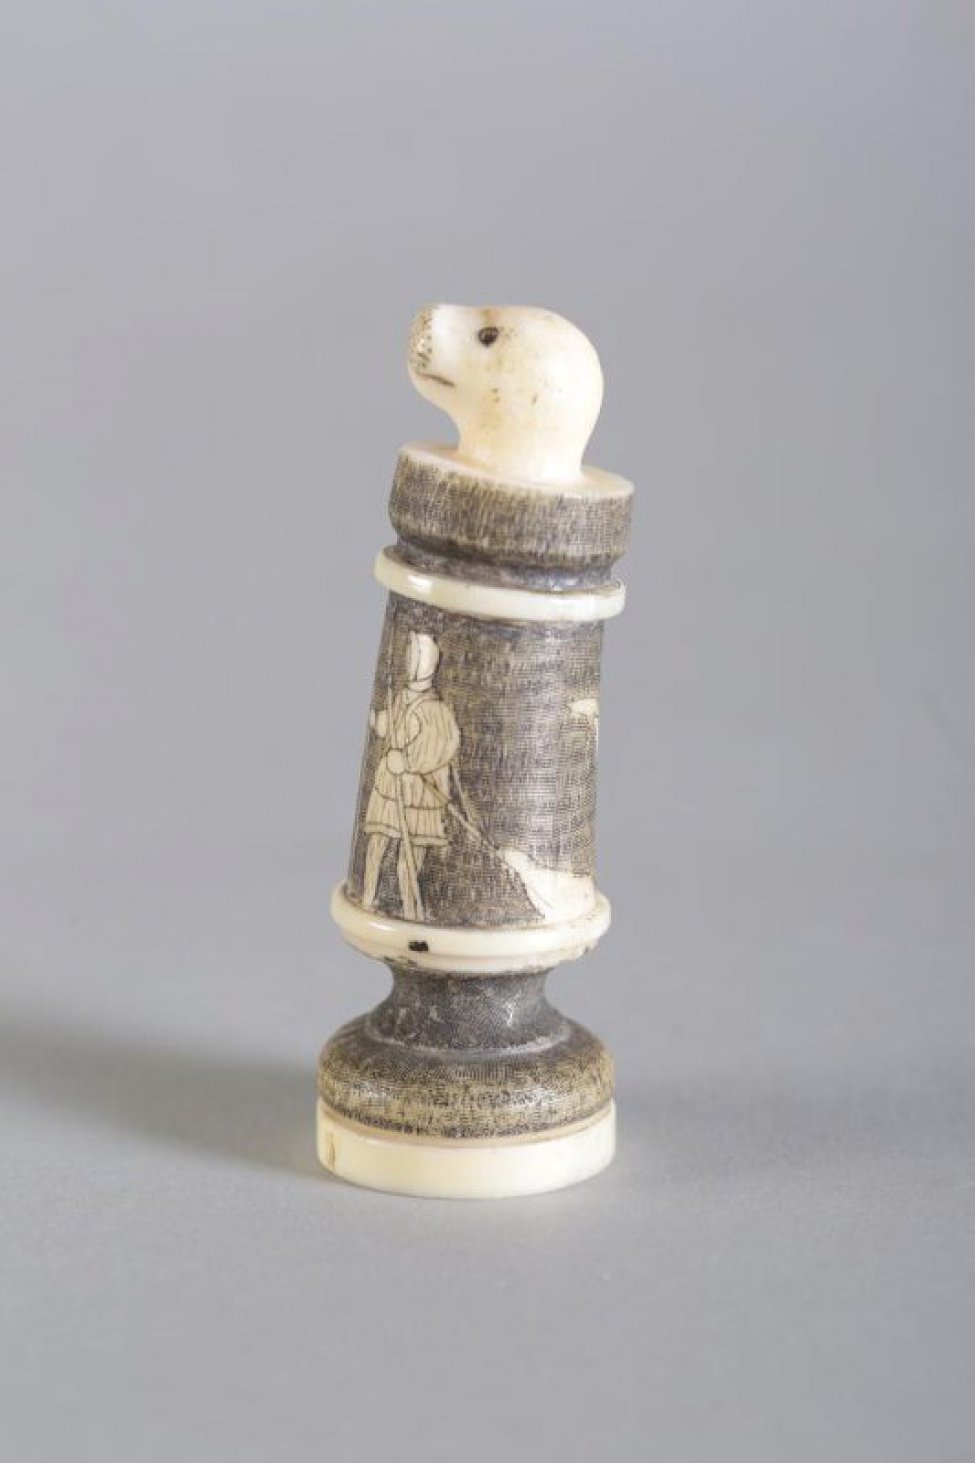 Шахматная фигура в виде цилиндрической профилированной балясины, вверху заканчивается головой нерпы. Голова нерпы  белого цвета, с обозначенными неглубокой резьбой (процарапыванием) маленькими круглыми глазами, линией рта и точками на морде. Средняя  часть покрыта тонированной в черный цвет гравировкой, где изображены в цвете кости две фигуры охотников в зимней одежде с гарпунами в левой руке и с привязанными к плечу убитыми нерпами. Фигуры в 3/4 повороте лицом друг к другу, на обороте шахматной фигуры над нерпами - взлетевшая птица (чайка). Два профилированных пояска и низ постамента белого цвета. Вся фигура выполнена из одного куска бивня.